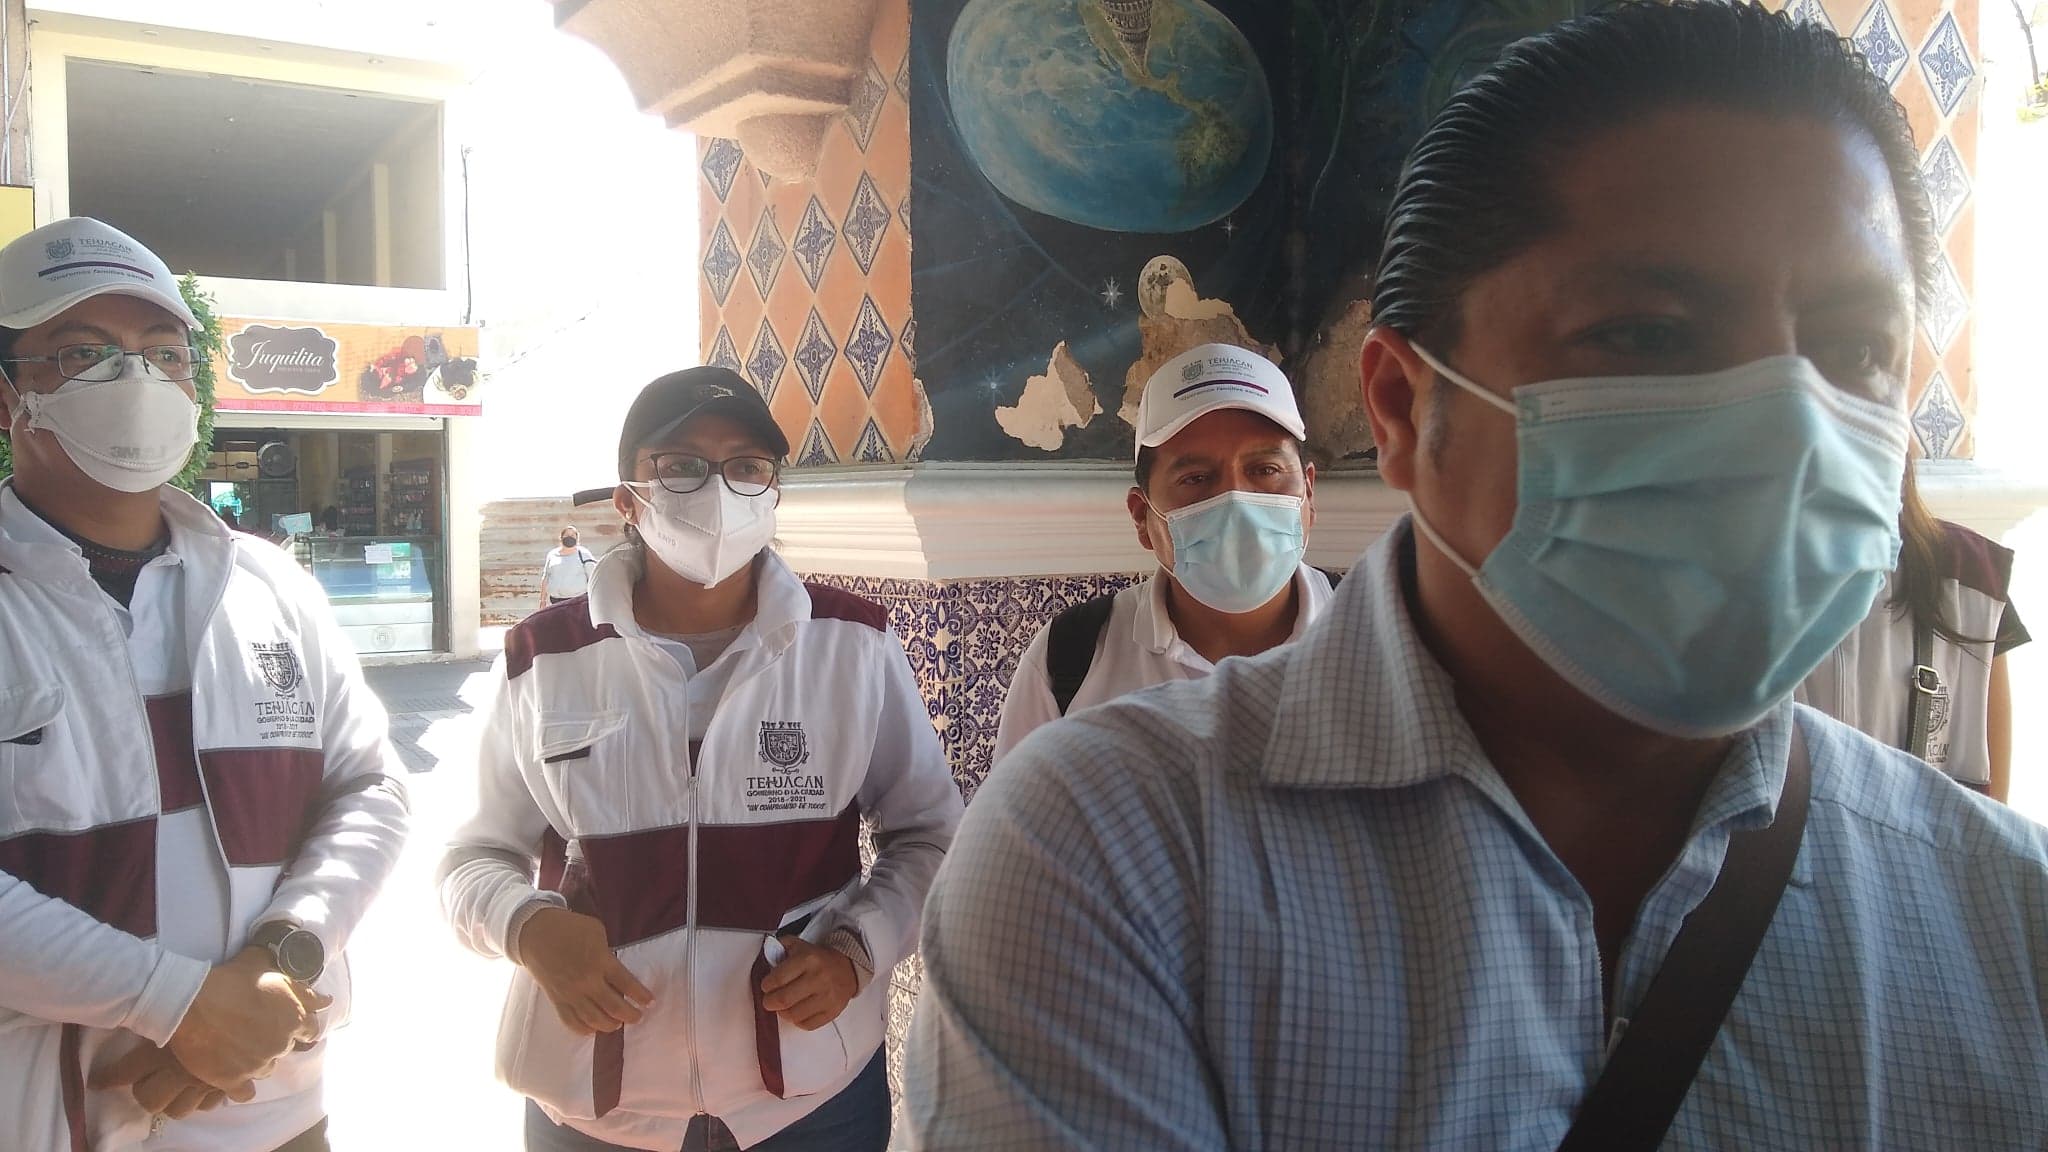 Comuna espera vacuna anti Covid para personal de riesgo en Tehuacán